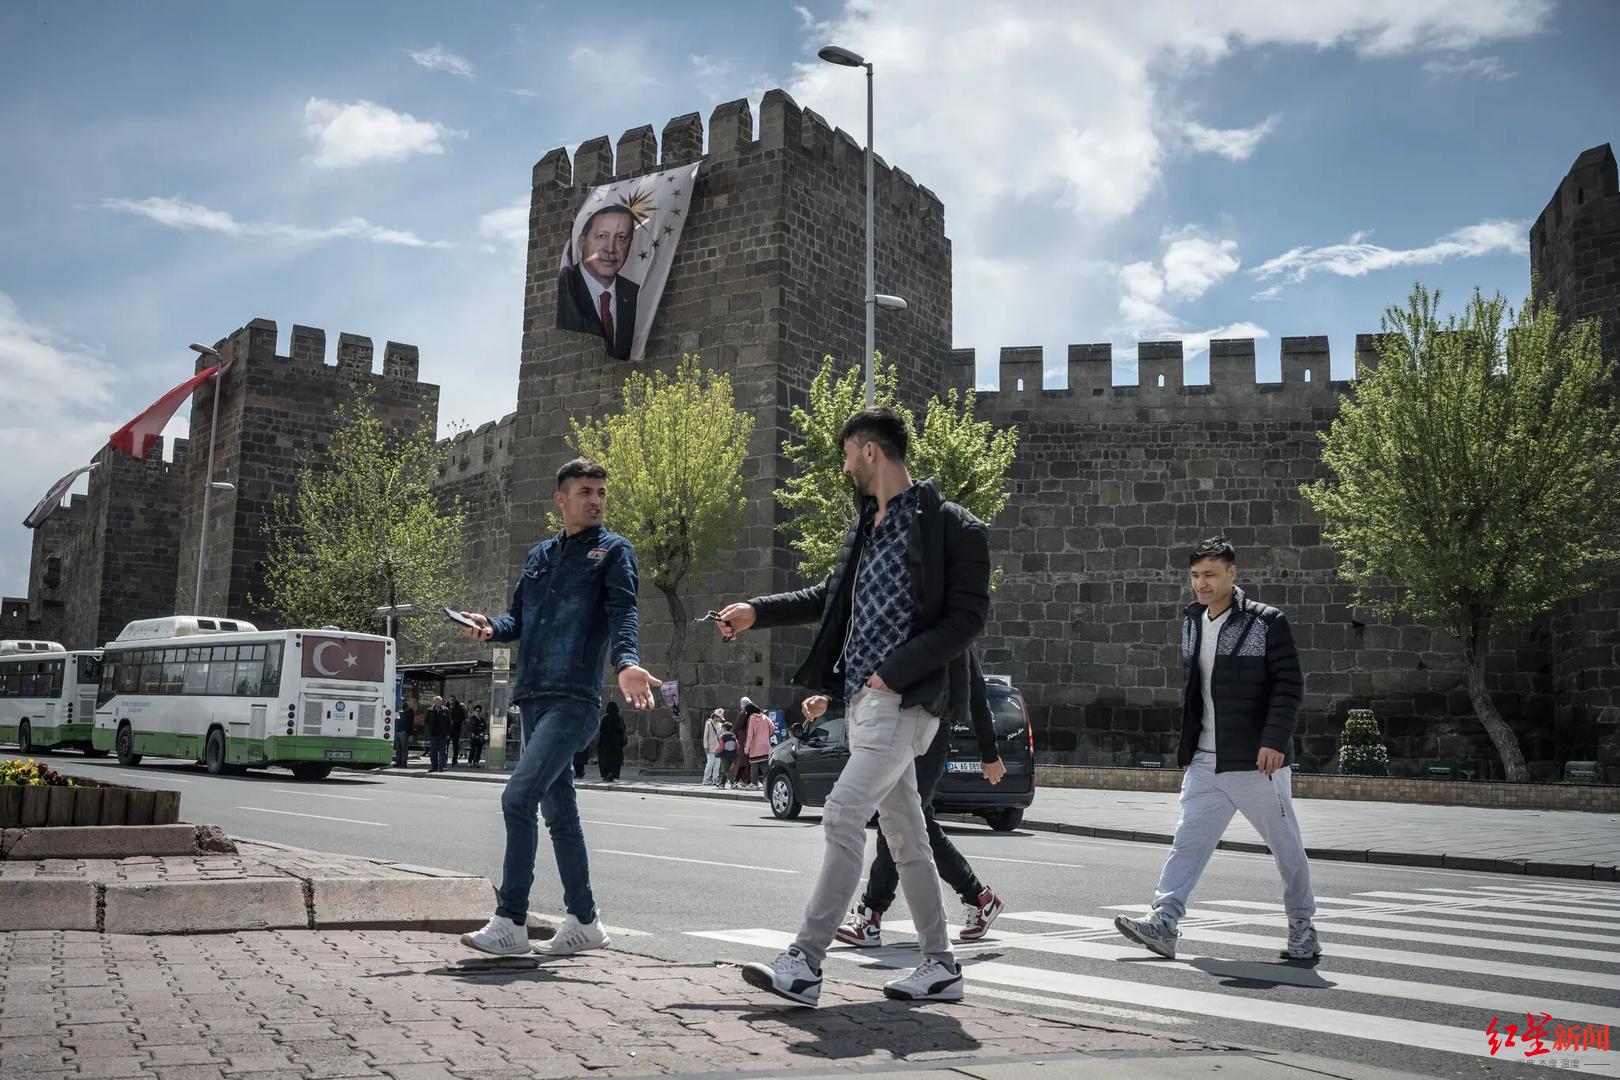 ↑土耳其街头的竞选海报